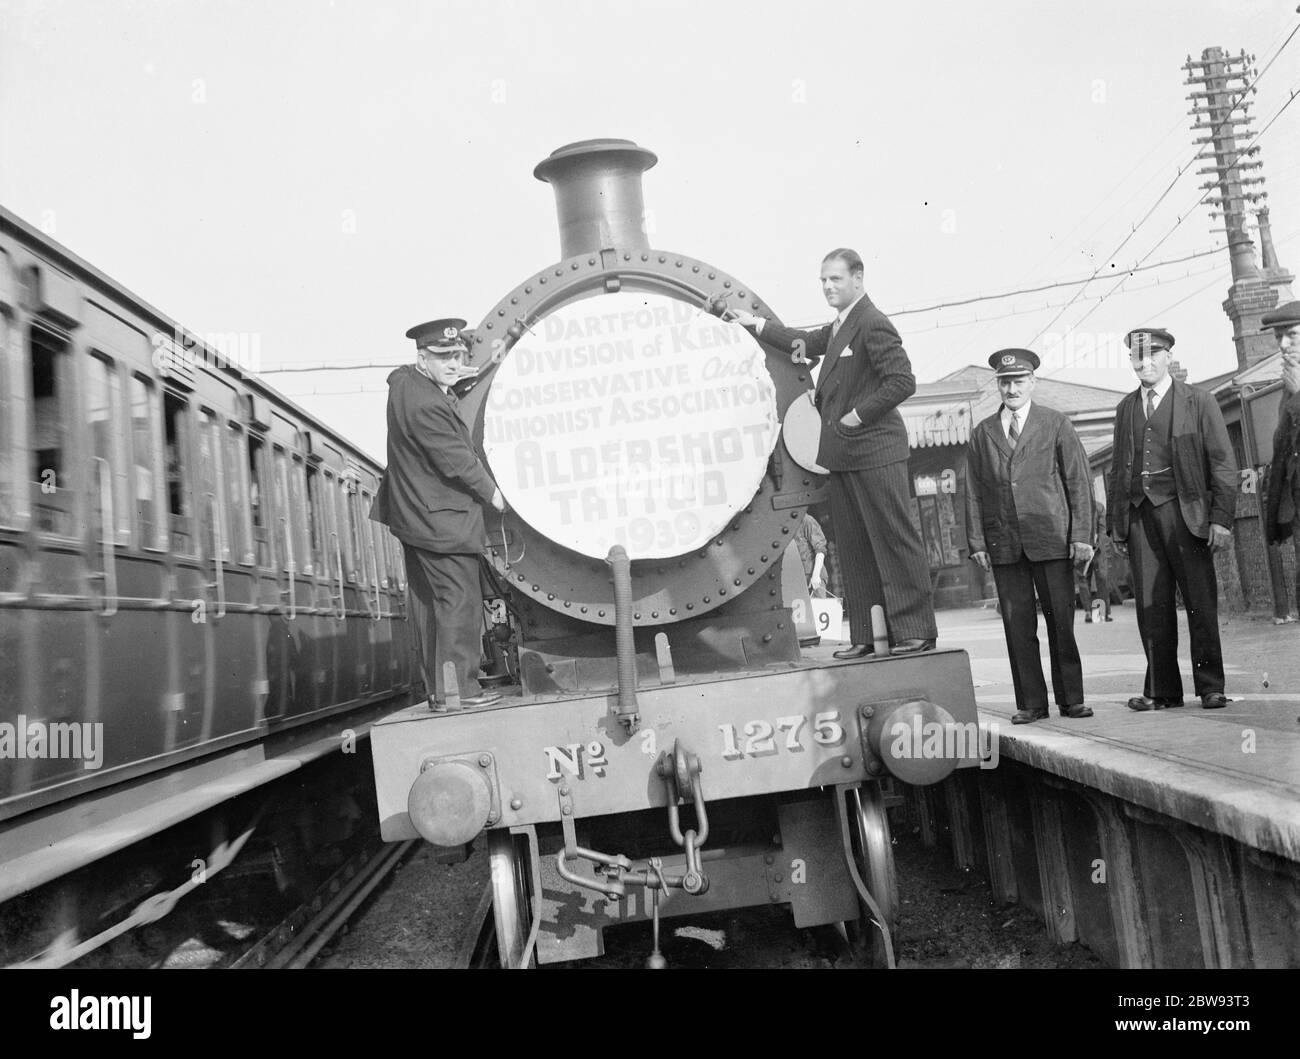 Herr David Behar posiert in einem Zug für die "Dartford Division of Kent Conservative and Union Association Aldershot Tattoo" . 1939 Stockfoto